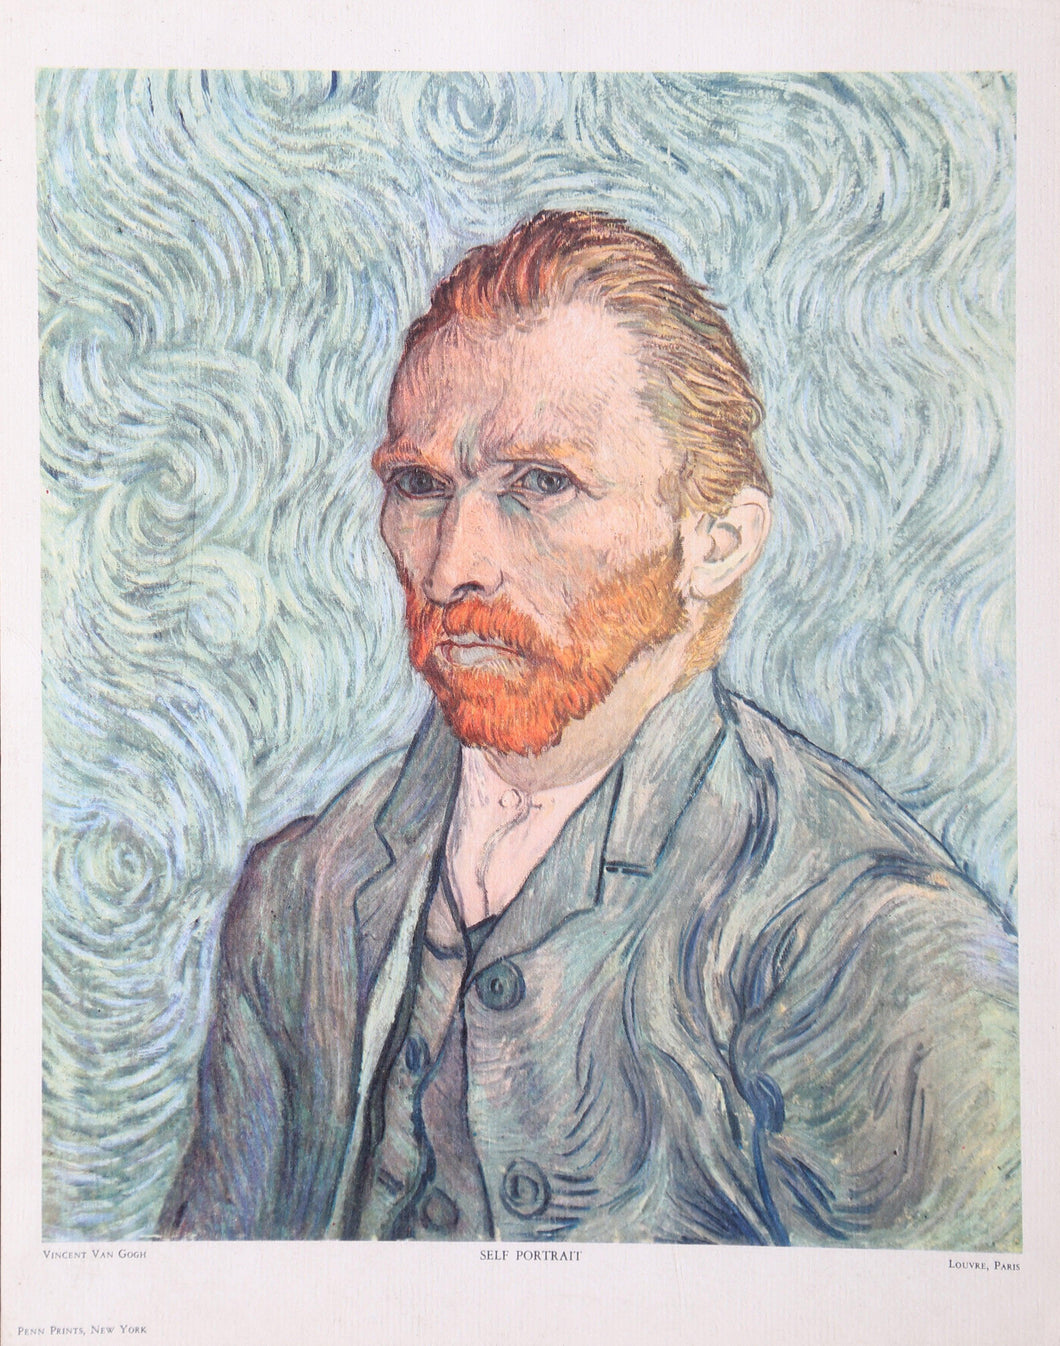 Self Portrait Poster | Vincent van Gogh,{{product.type}}